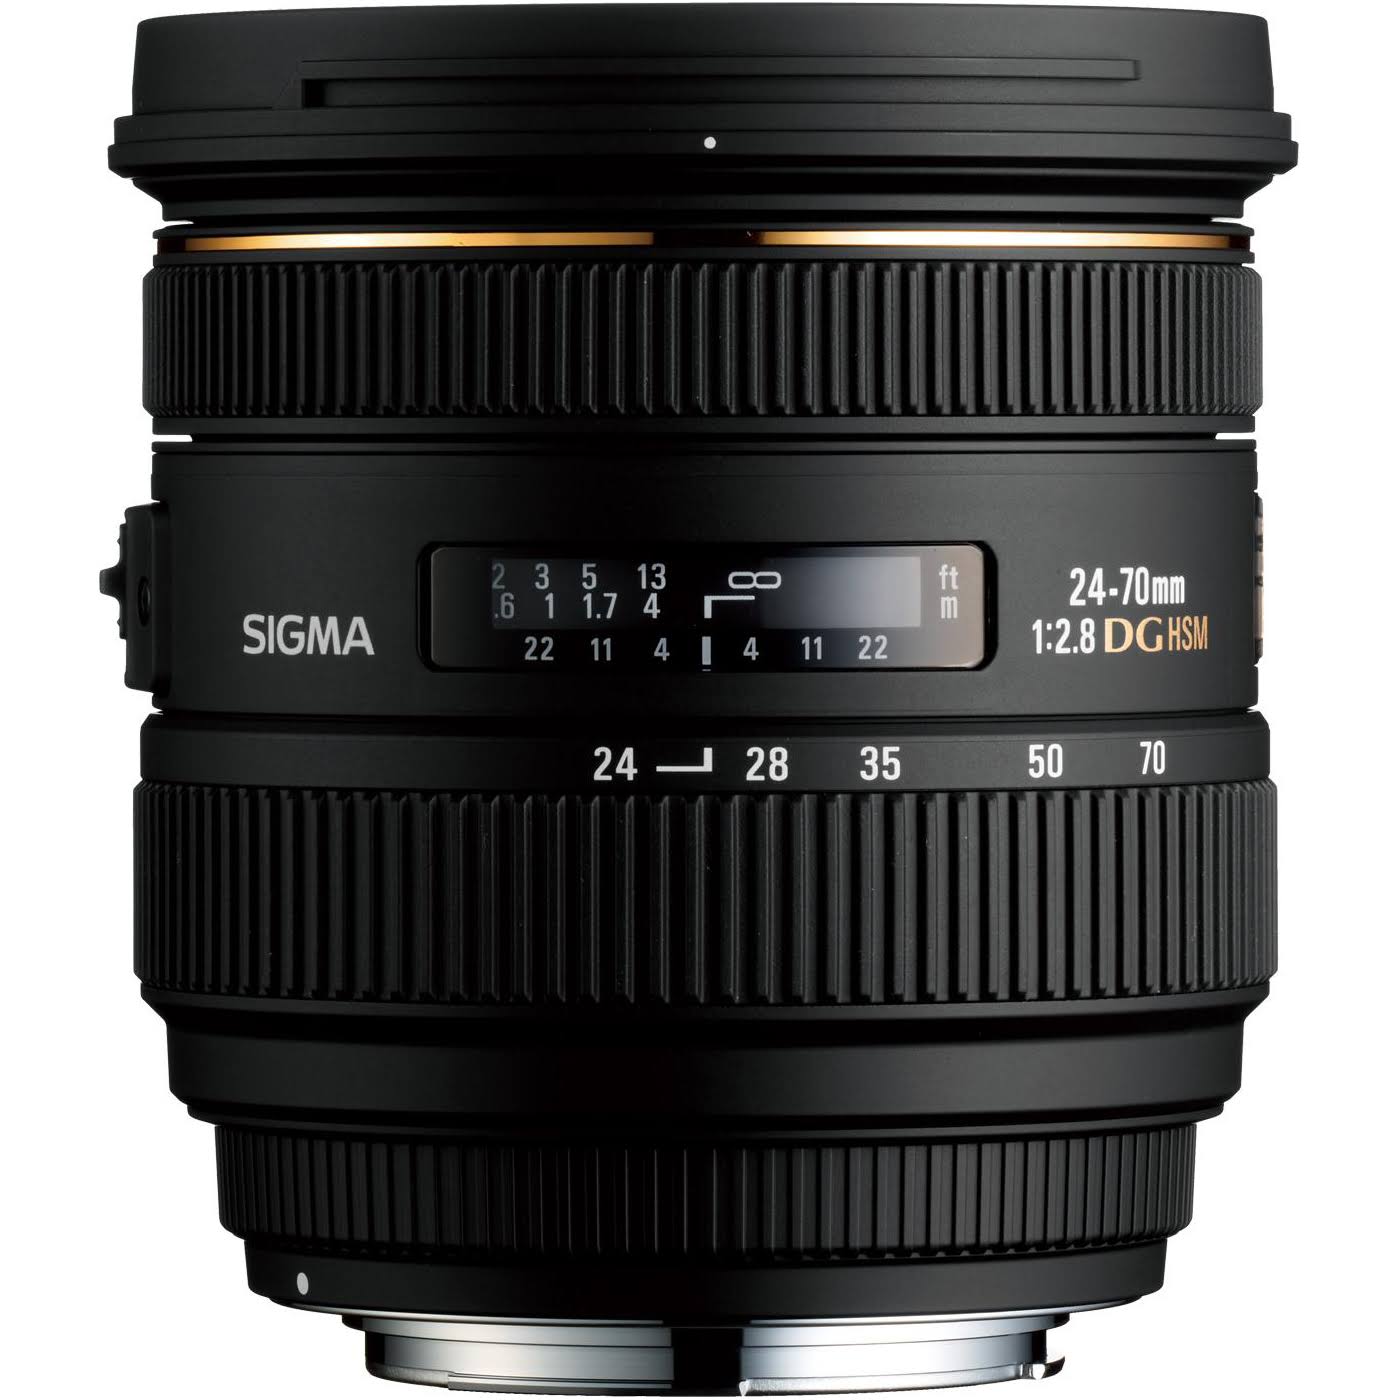 SIGMA 24-70mm f/2.8 IF EX DG HSM AF Standard Zoom Lens for Canon Digital SLR Cameras